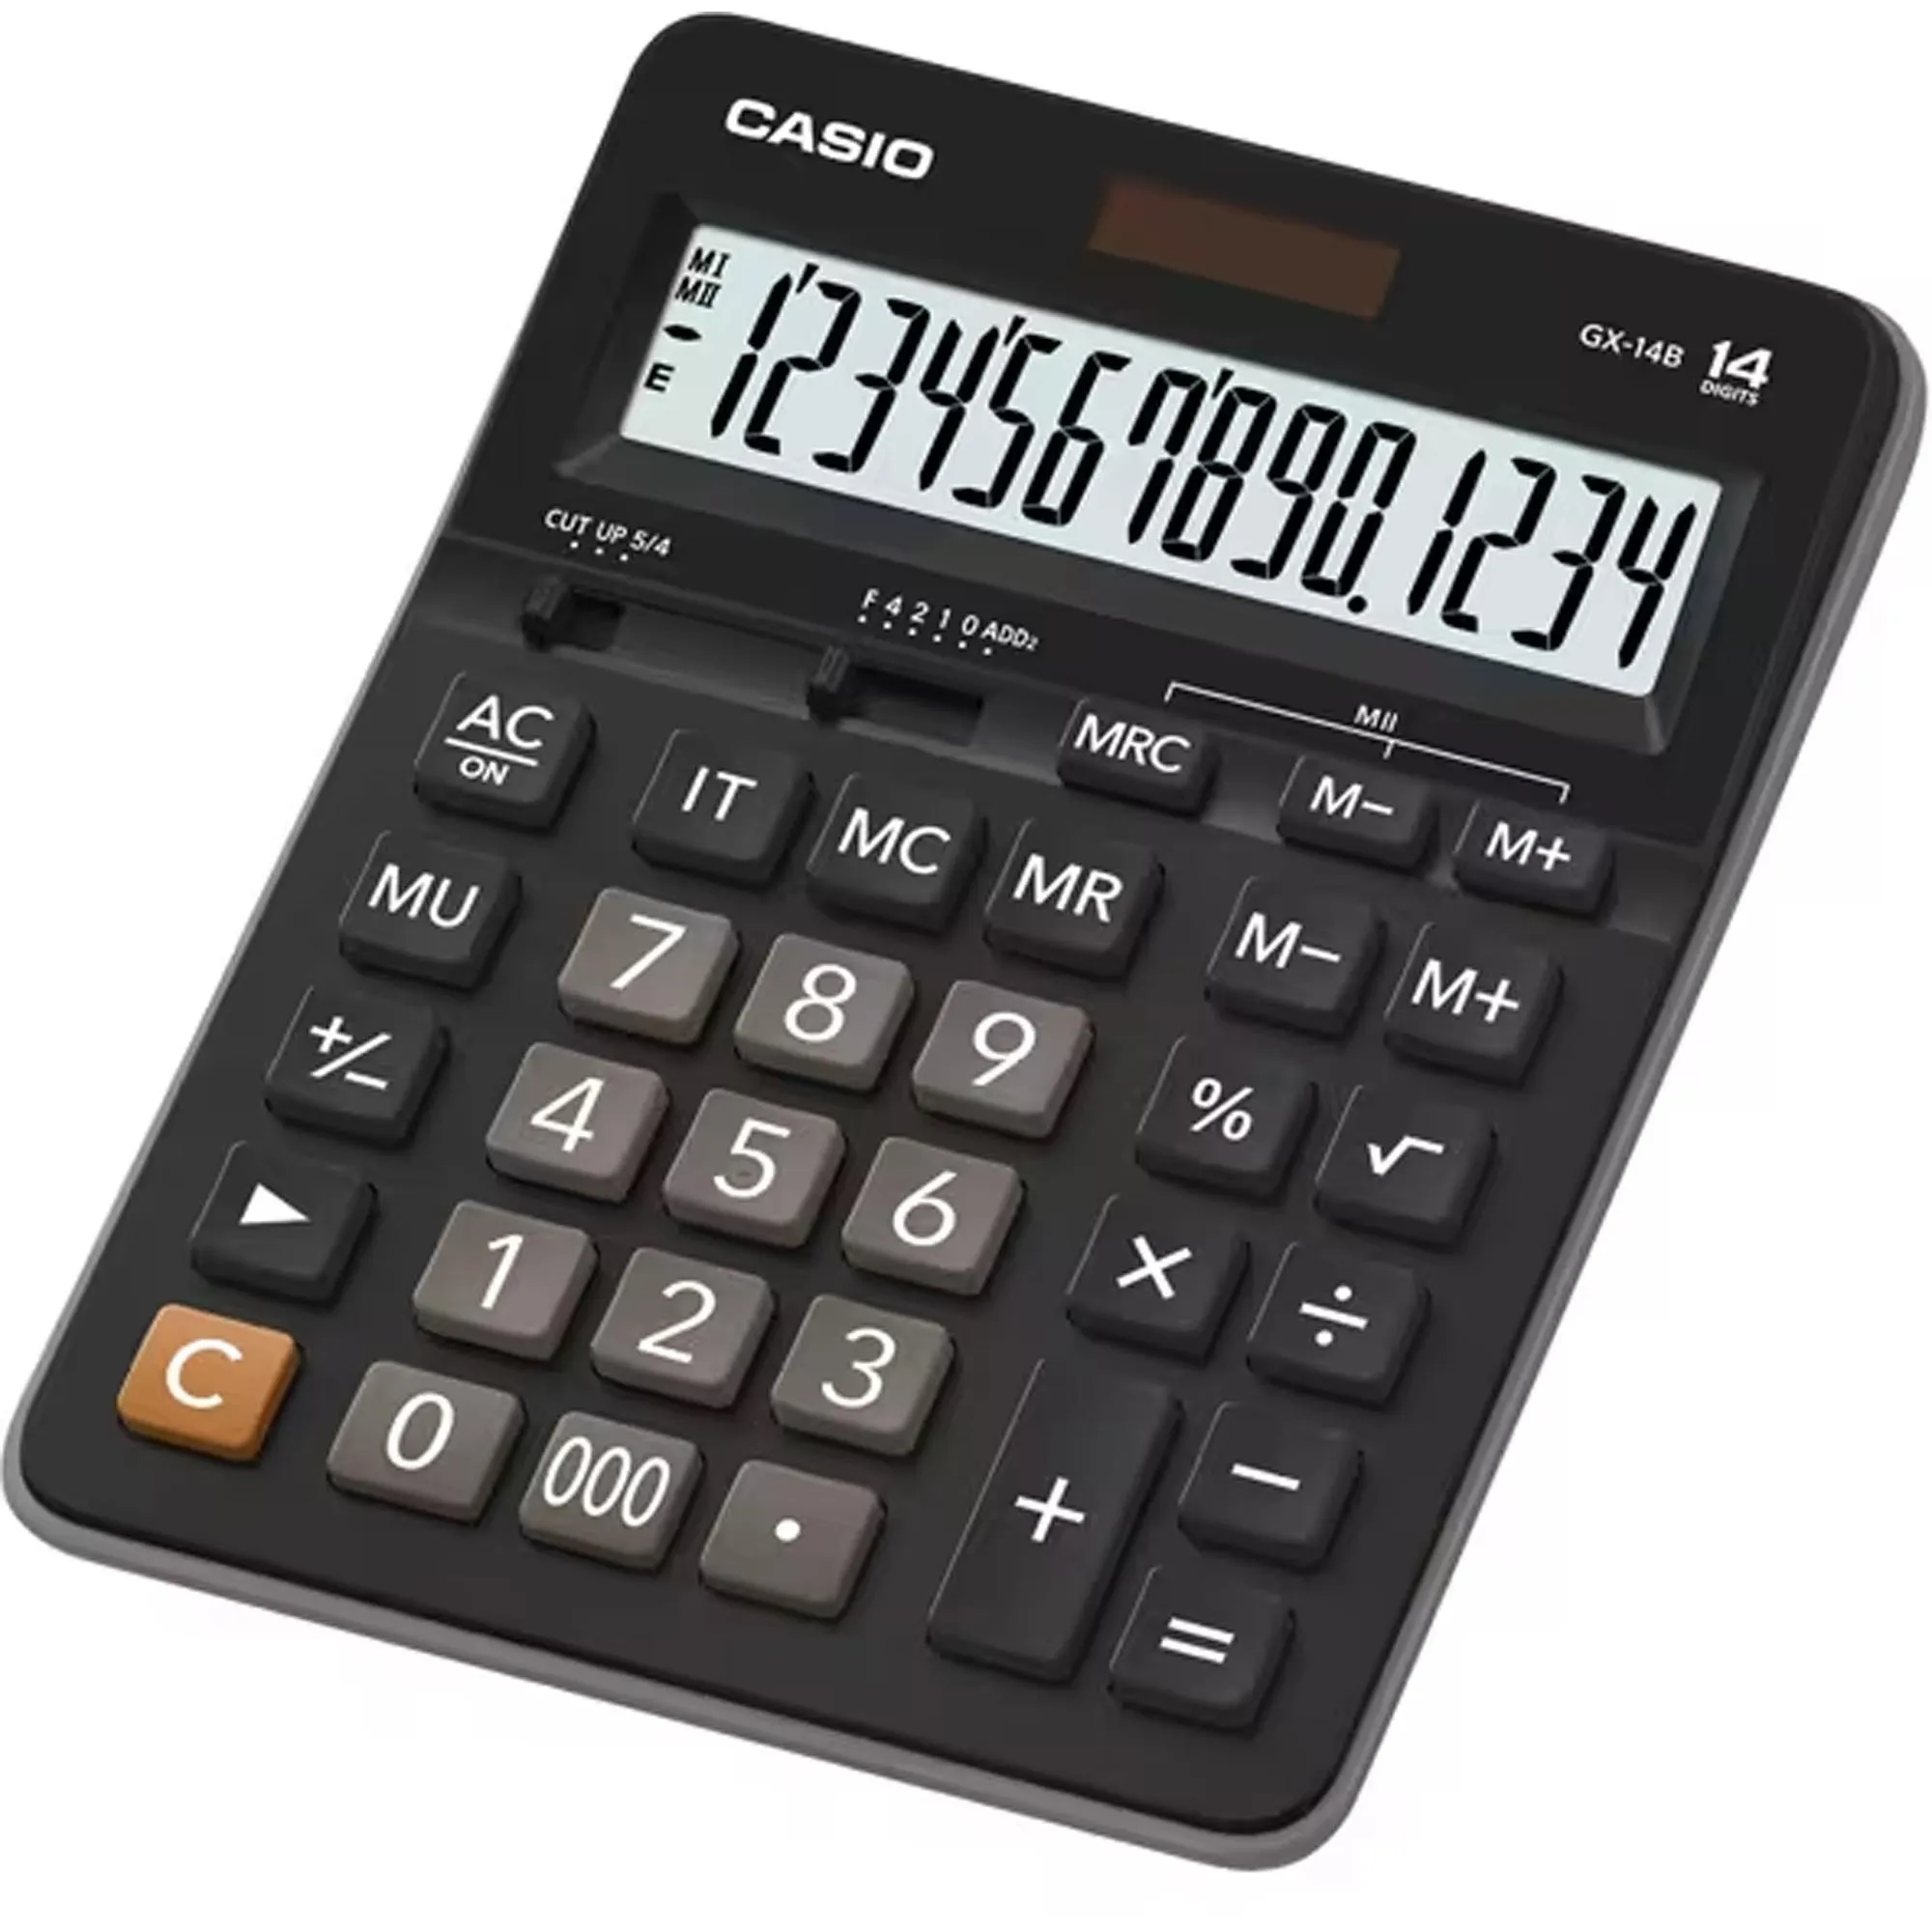 Calculadora De Mesa Casio GX14B 14 Dígitos Preta por 75,99 à vista no boleto/pix ou parcele em até 3x sem juros. Compre na loja Mundomax!